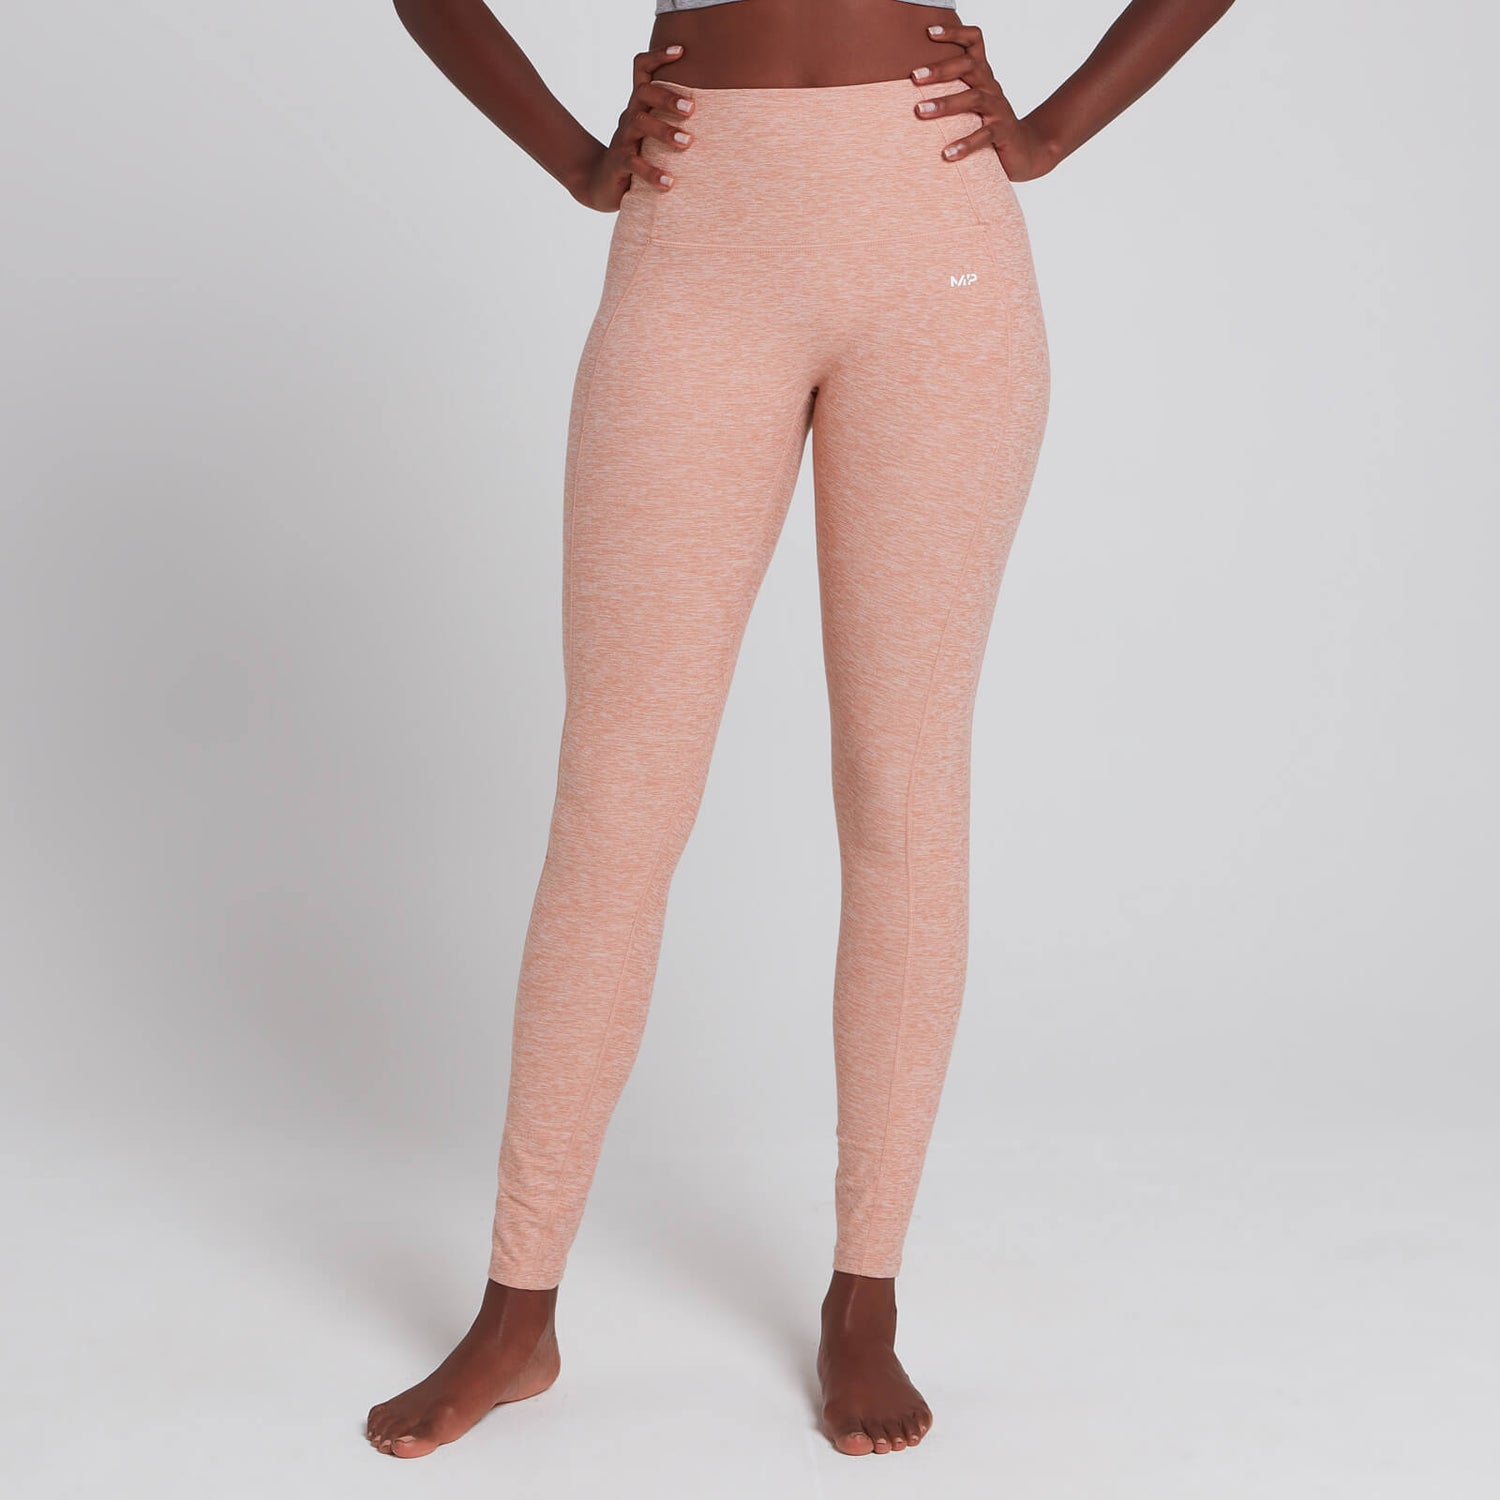 Naisten MP Composure -leggingsit - Haalistettu vaaleanpunainen marli - XXS